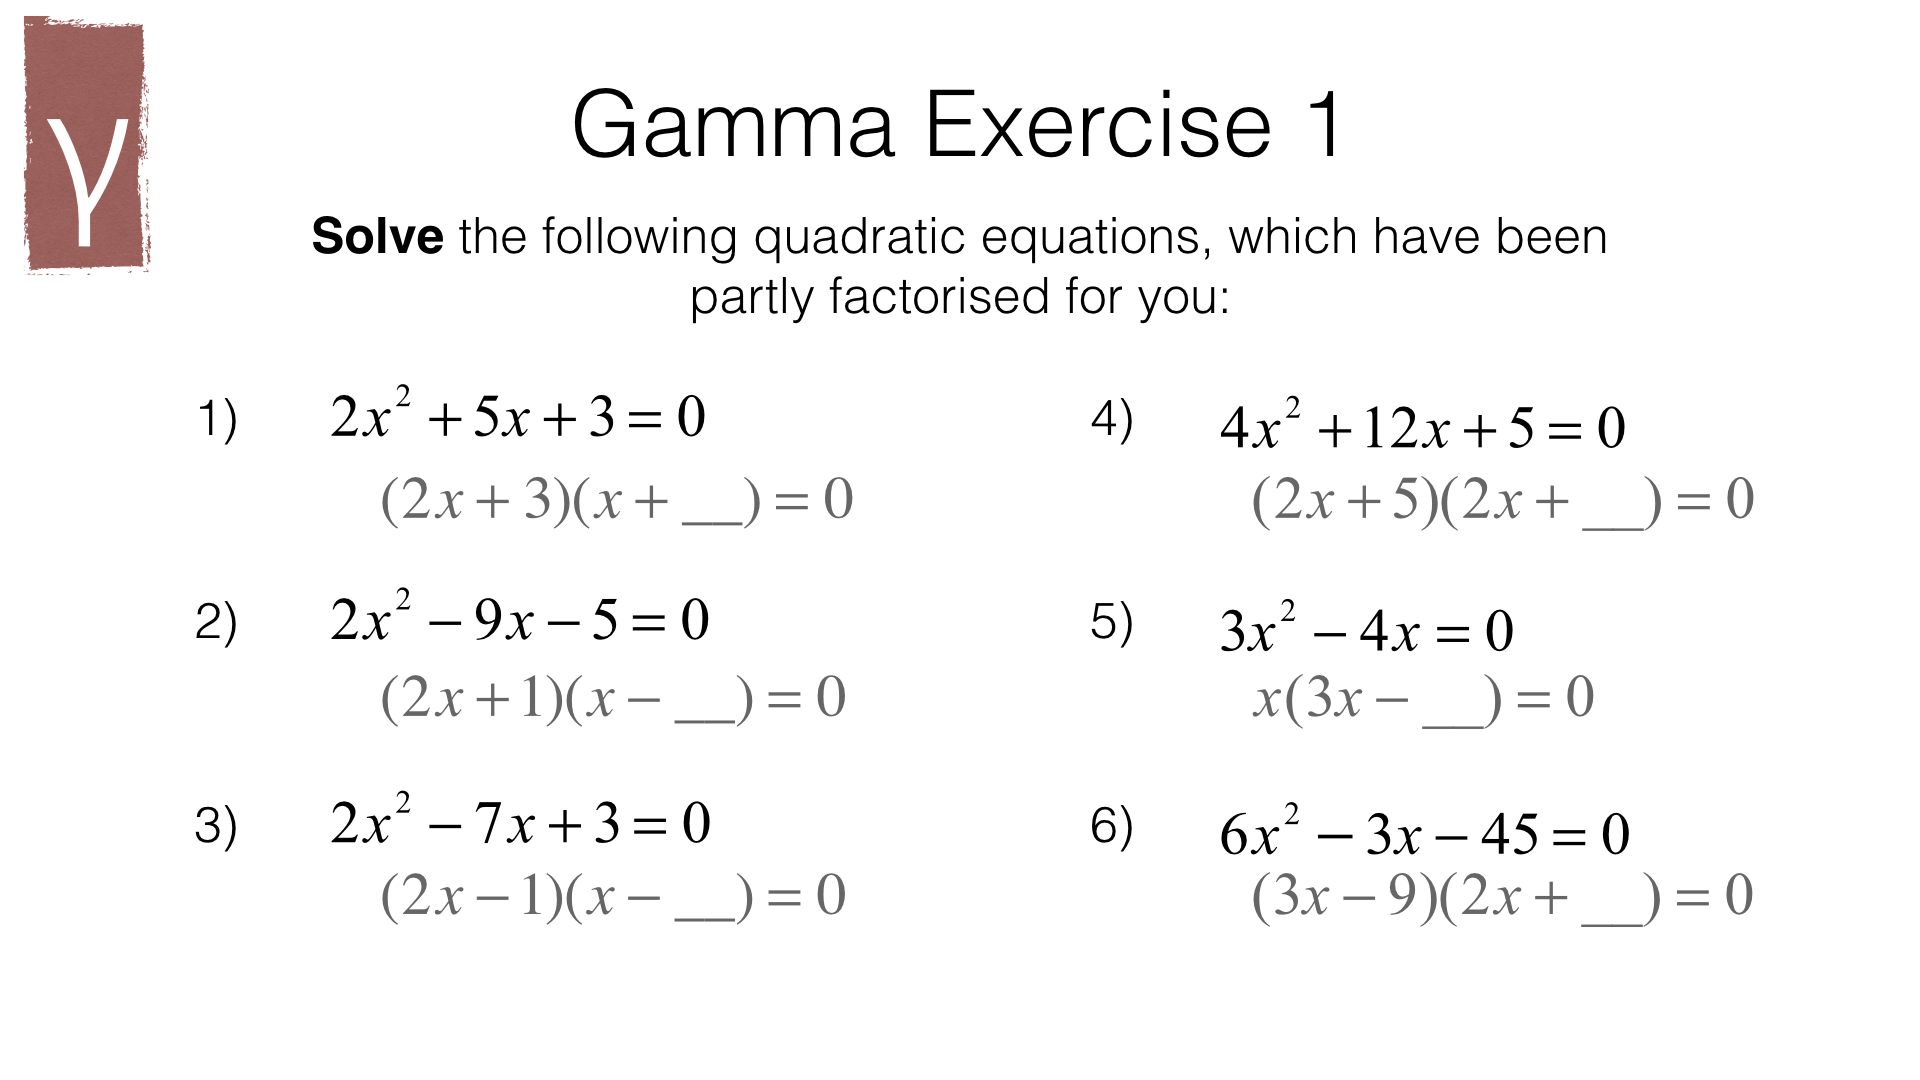 factoring quadratic equations problems